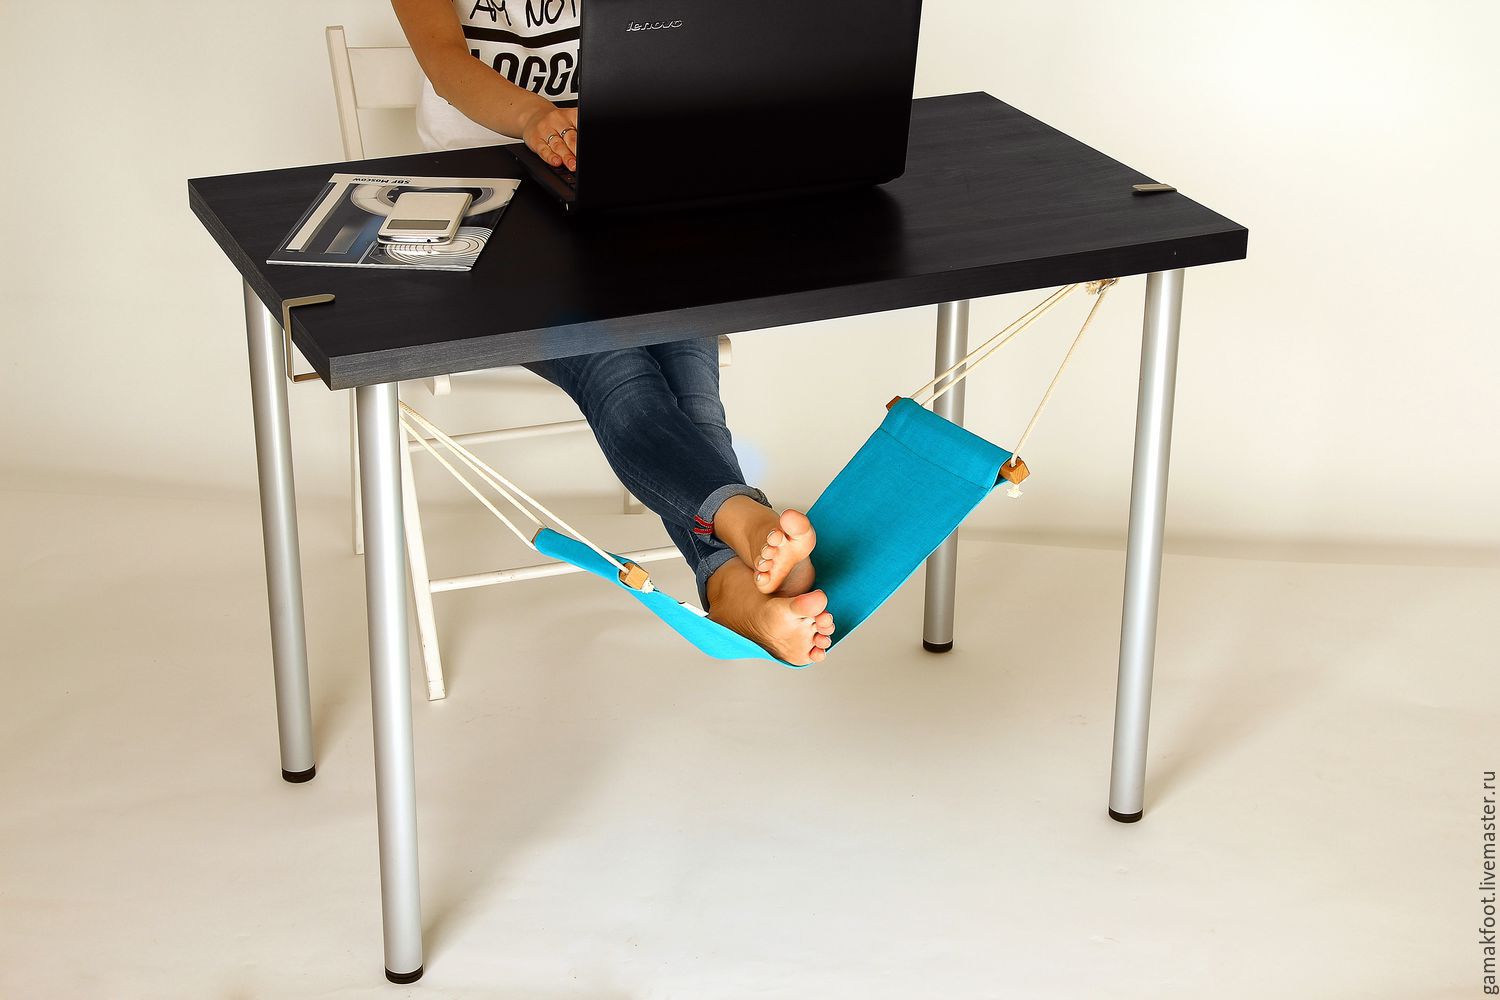 Подставка для ног под стол в офис своими руками с размерами